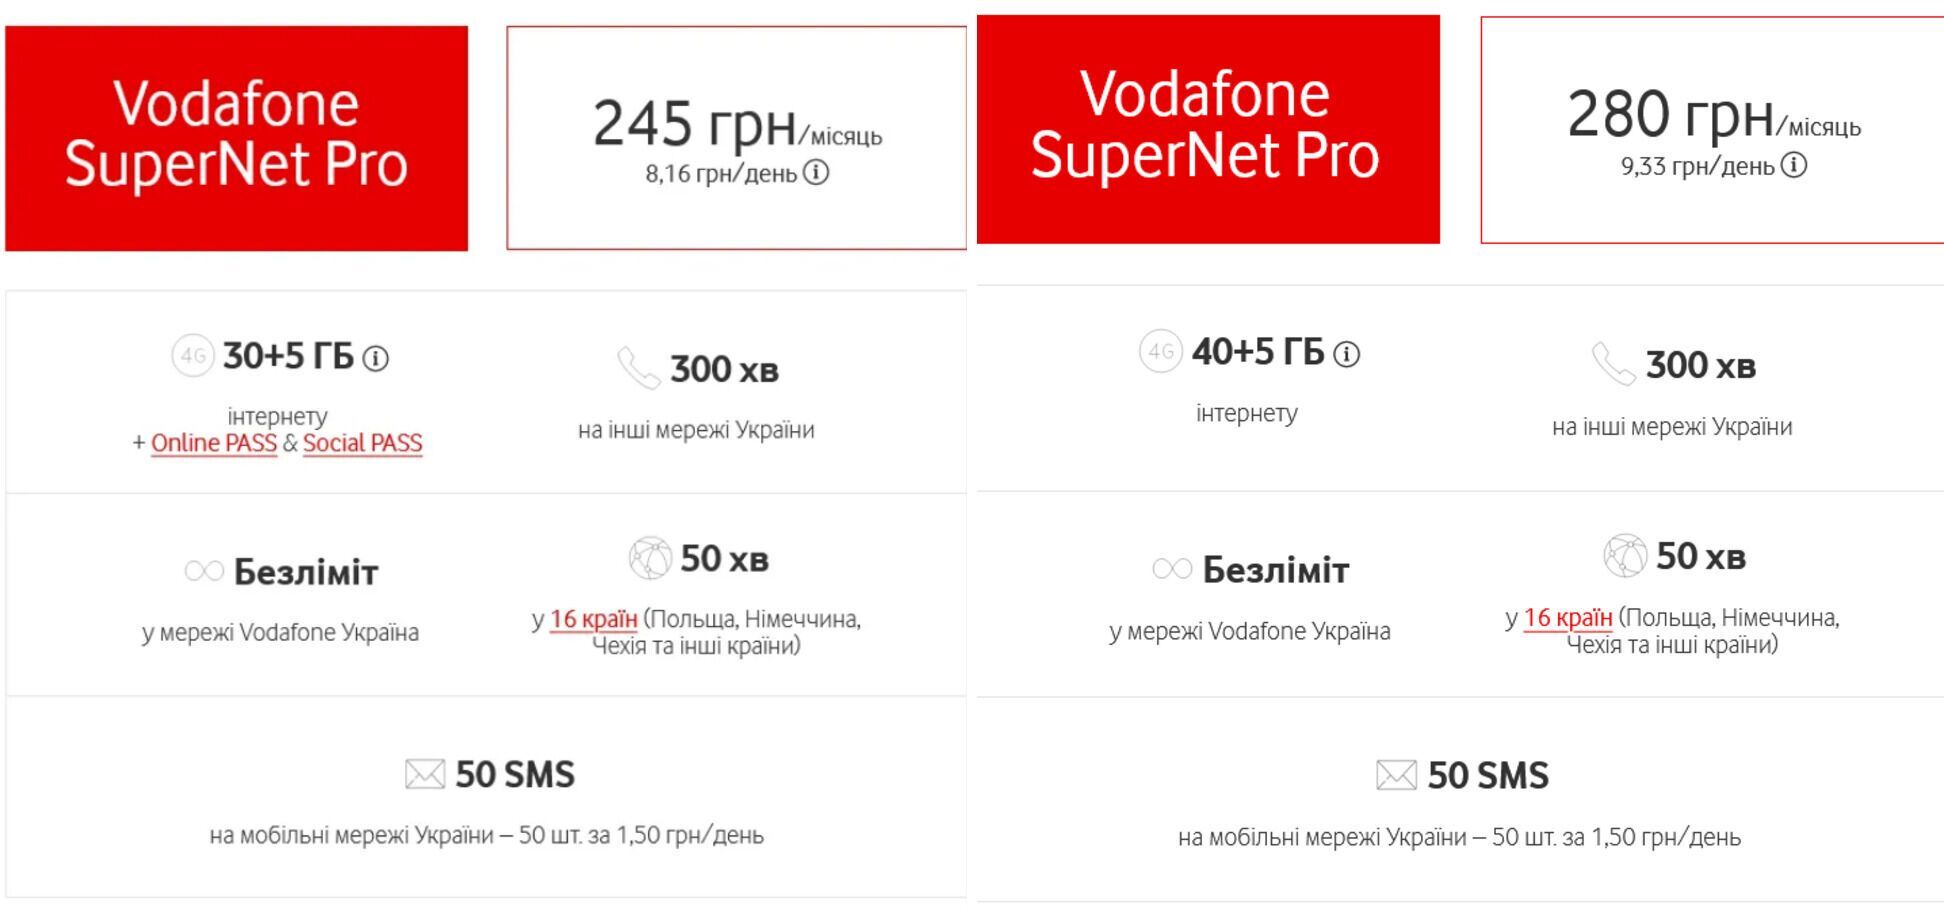 Стоимость тарифа SuperNet Pro увеличилась на 35 грн/месяц